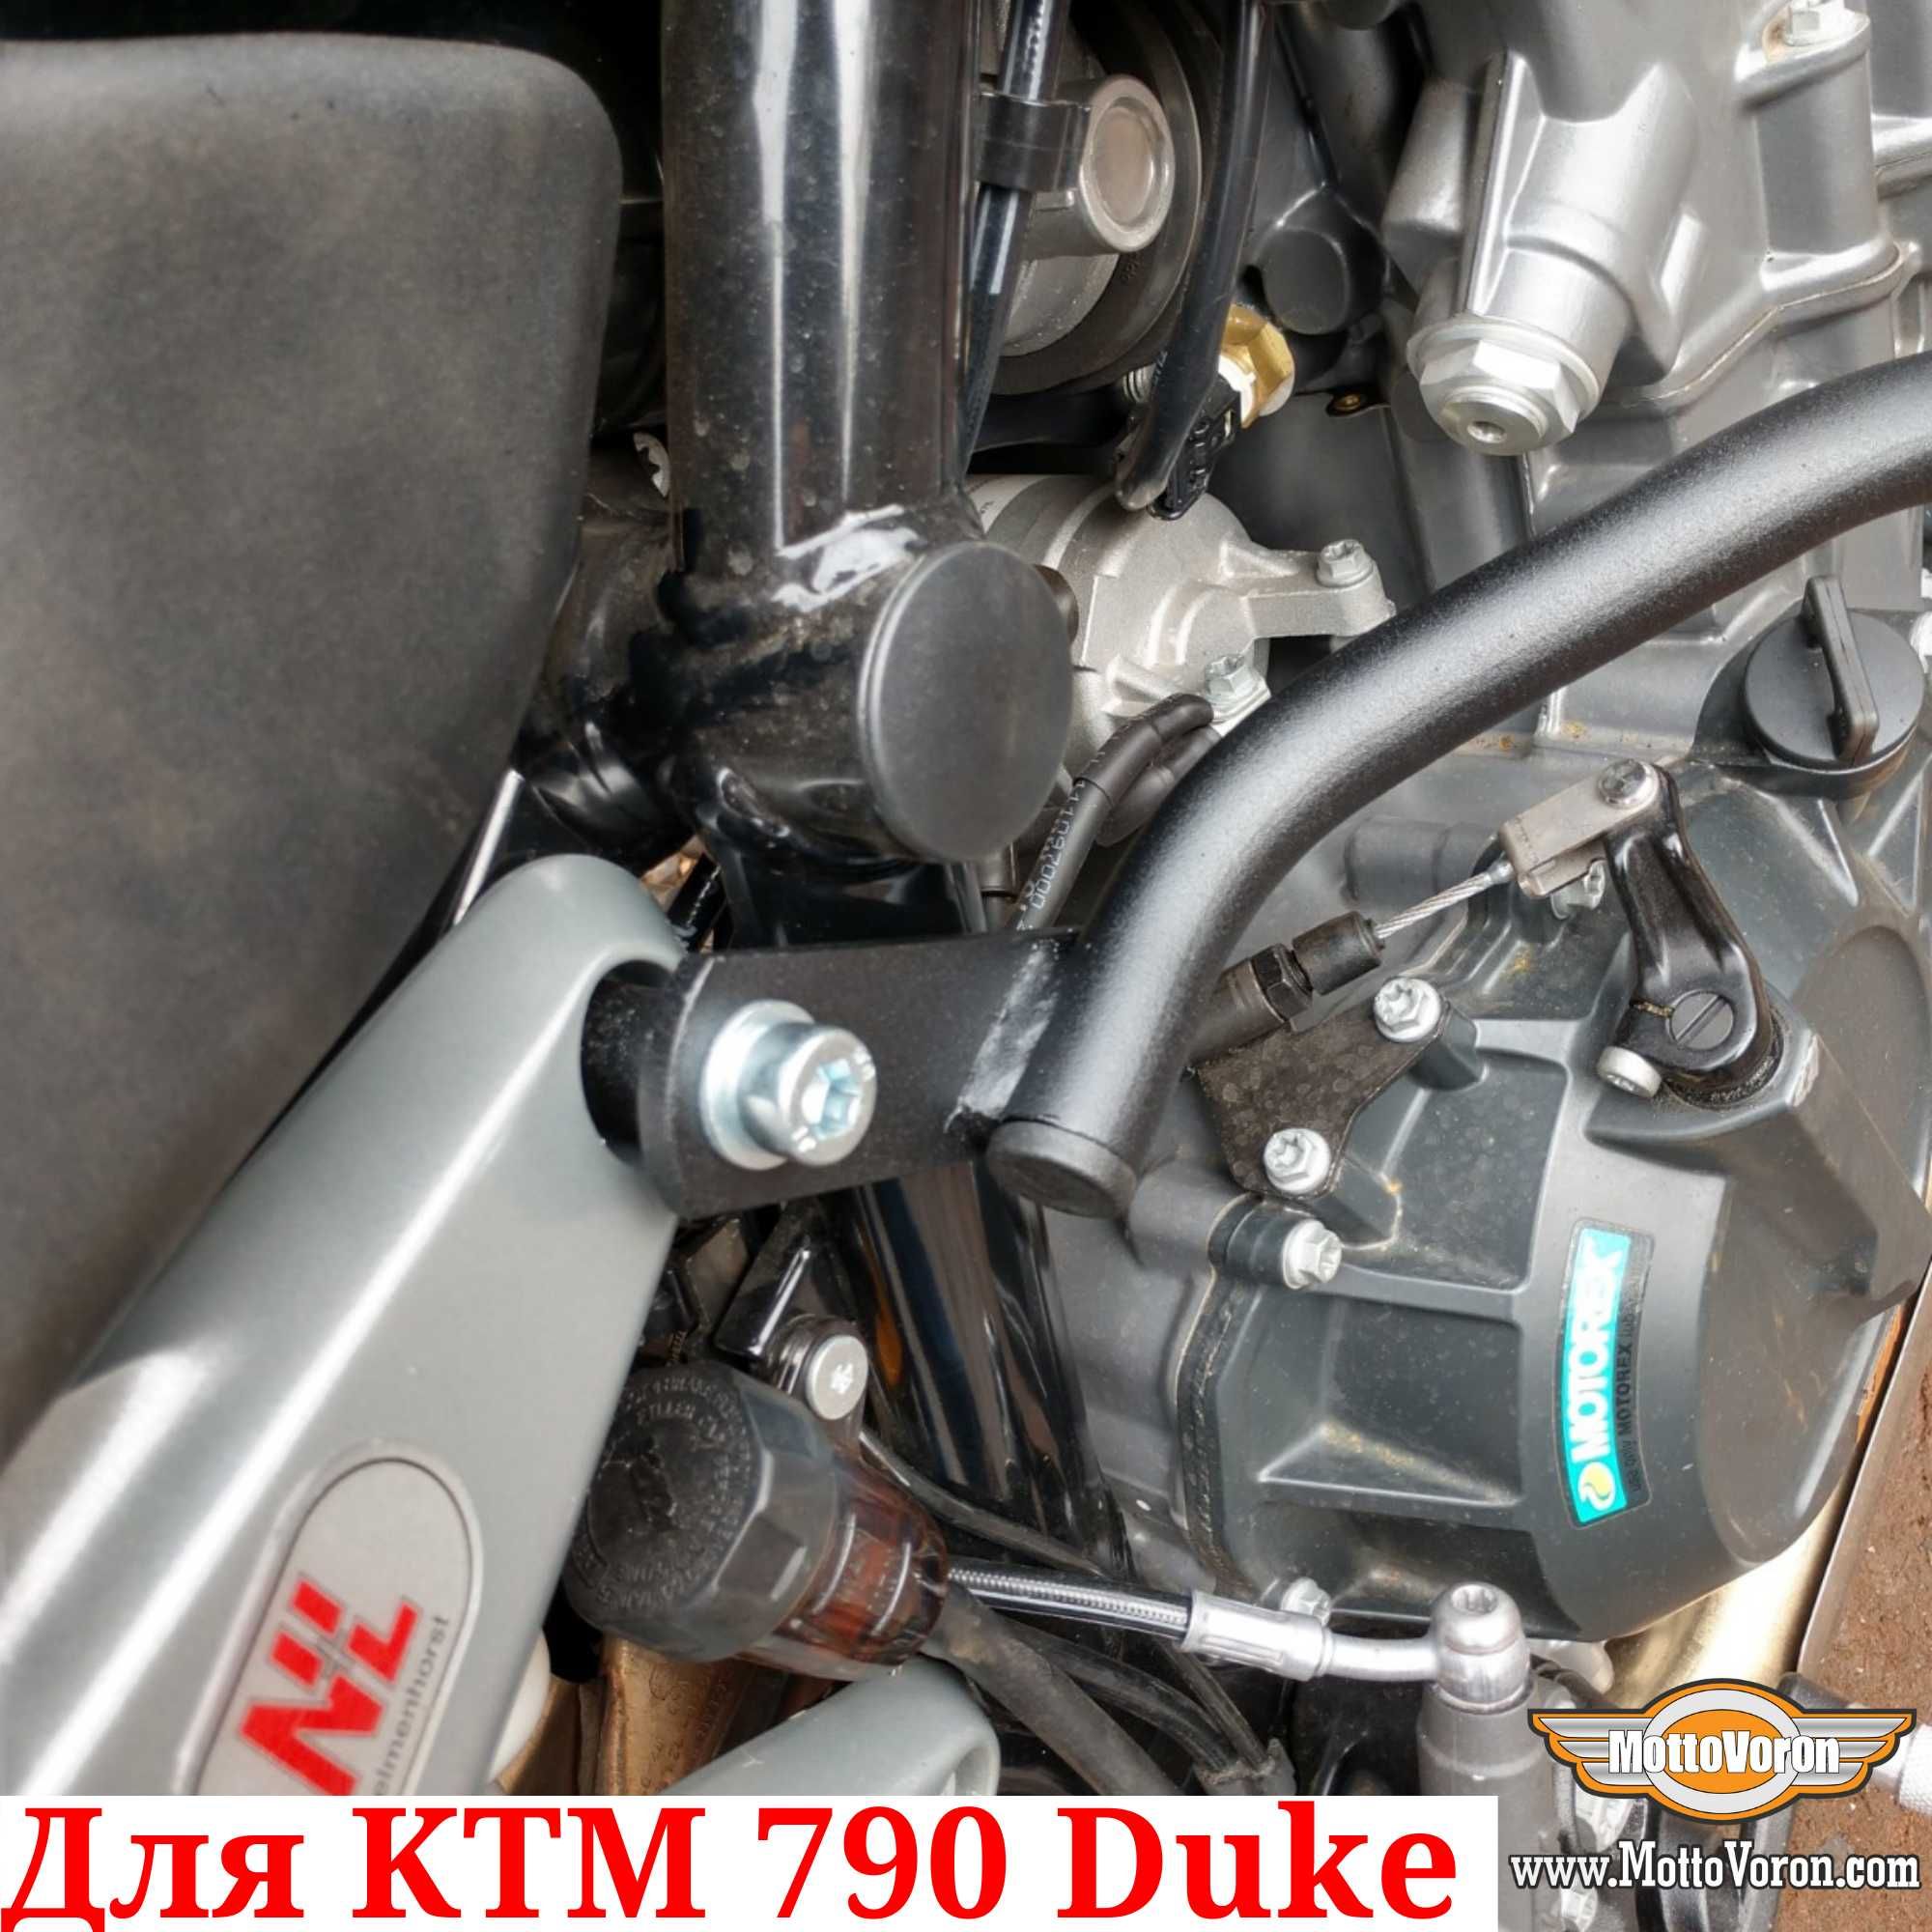 Защитные дуги KTM 790 Duke клетка KTM 890 Duke защита обвес 790 / 89